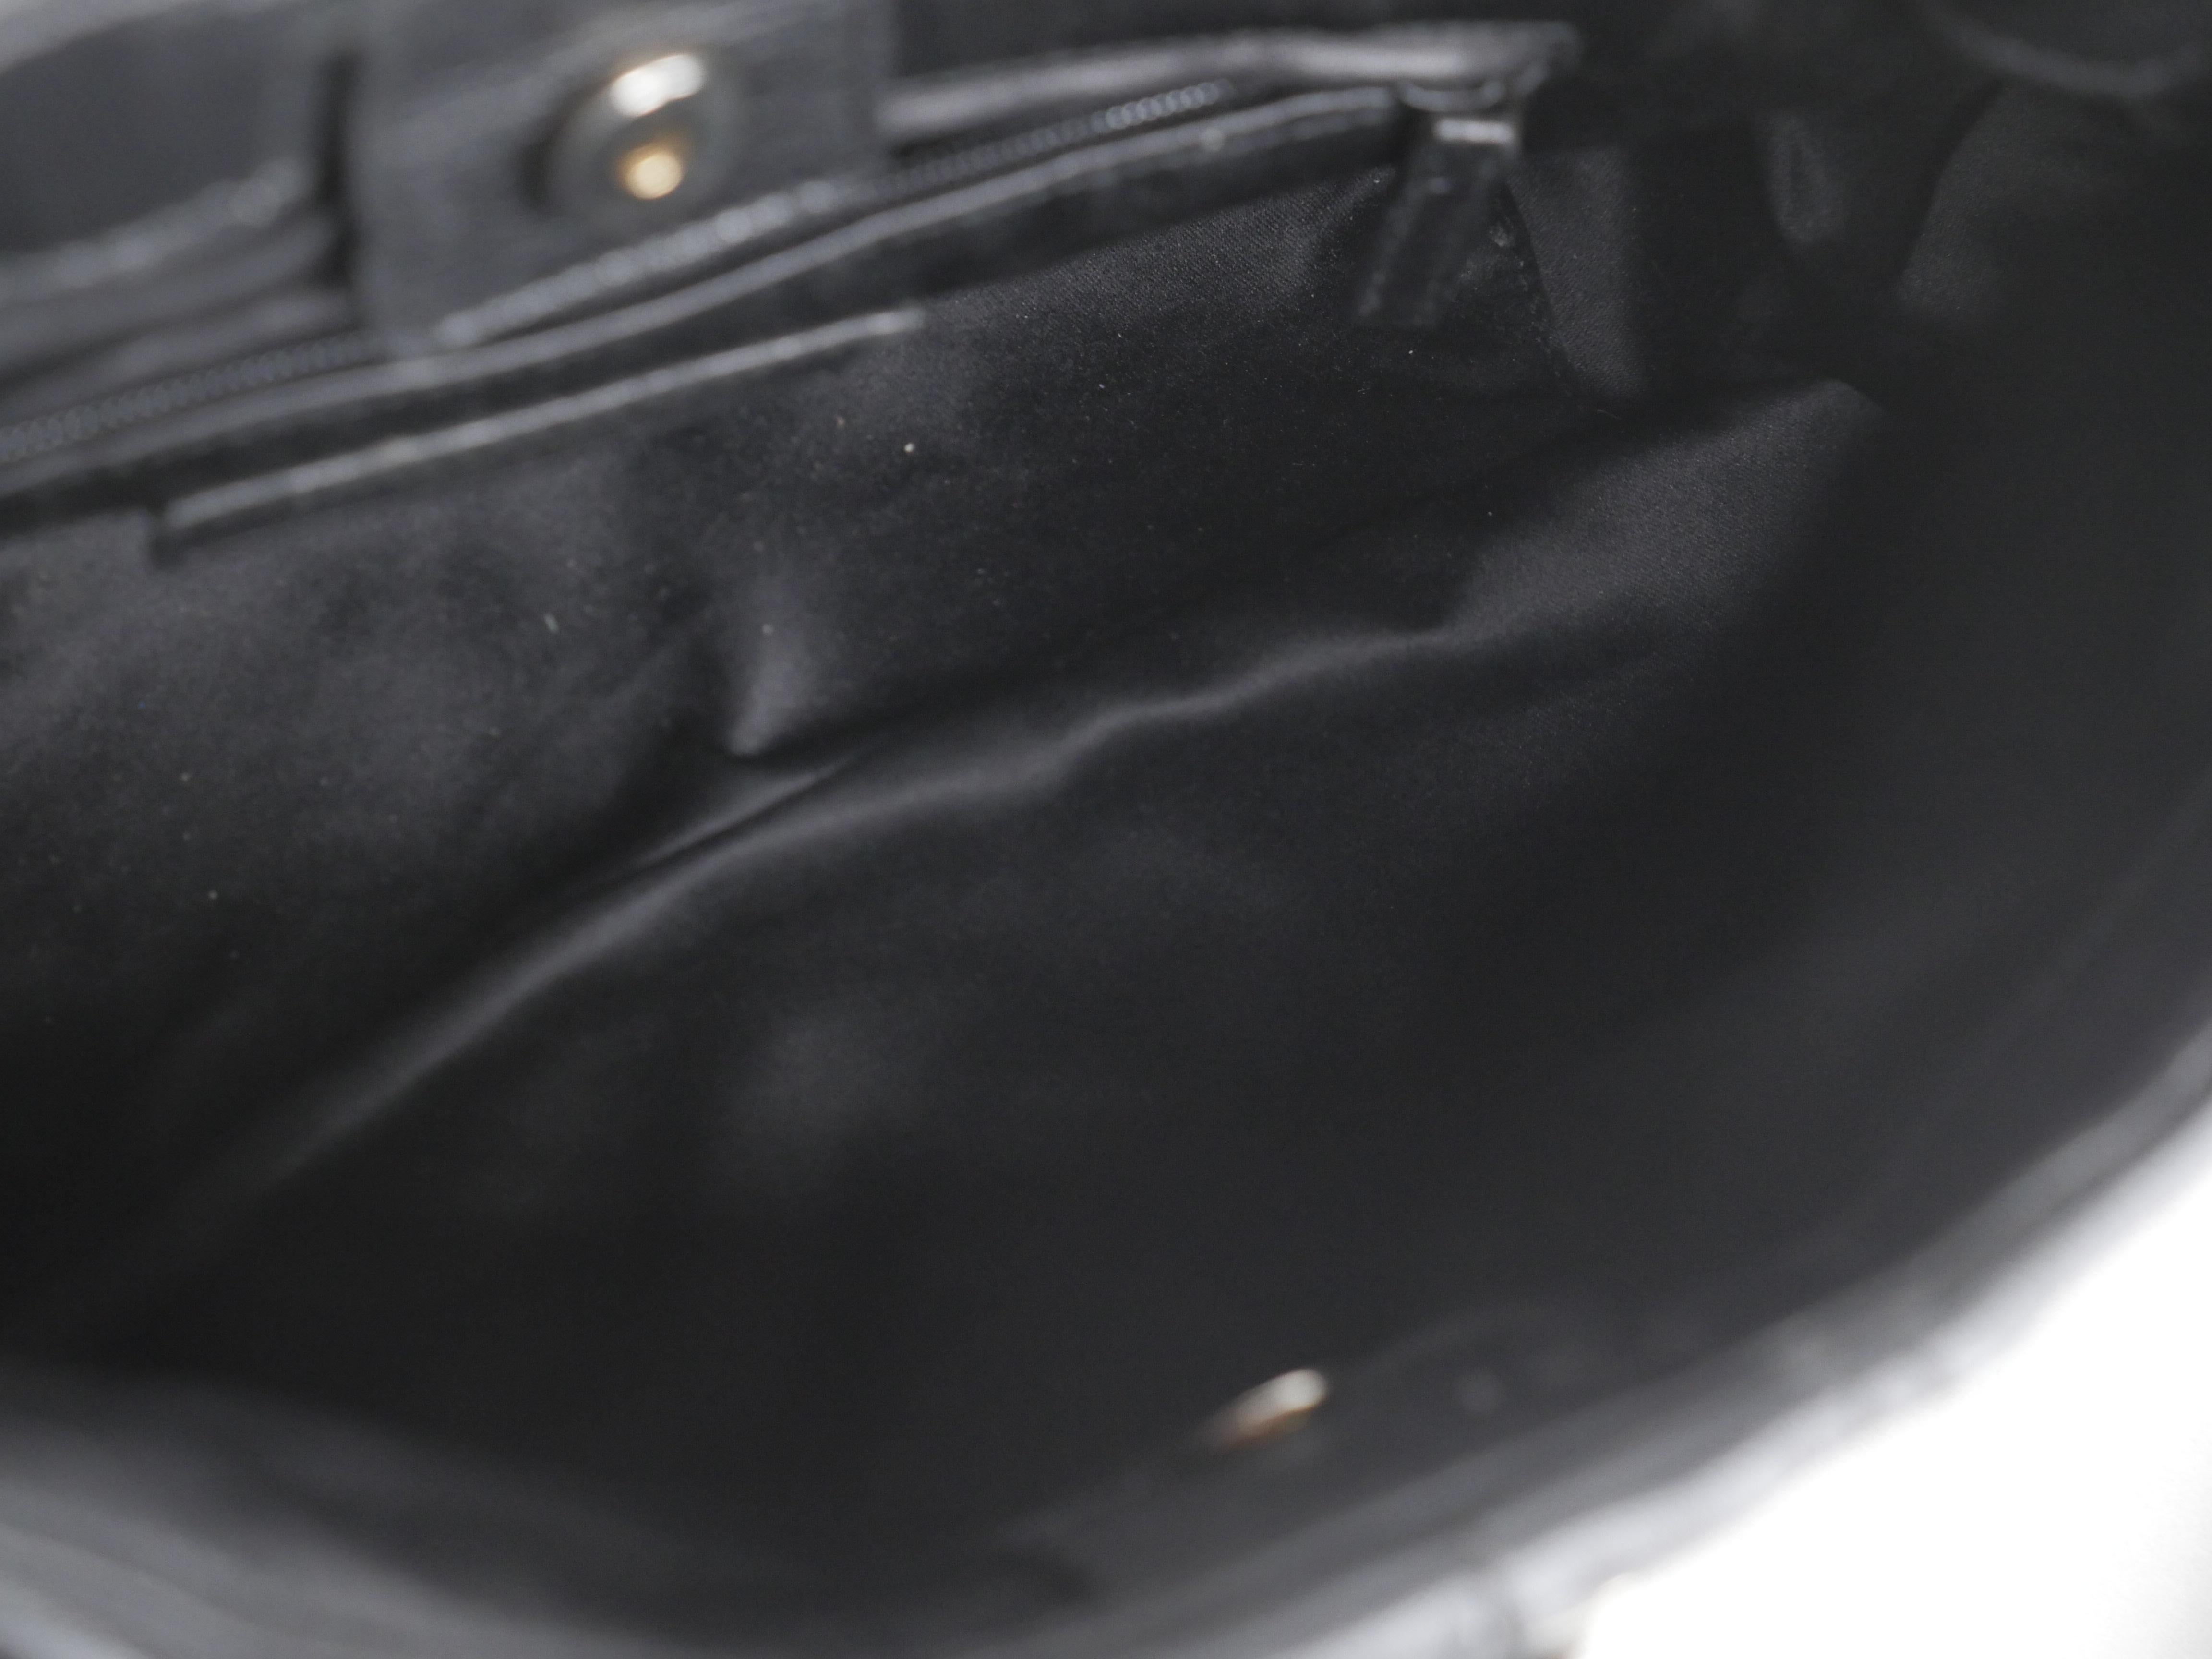 Yves Saint Laurent Black and Gold Hardware Shoulder Bag at 1stDibs